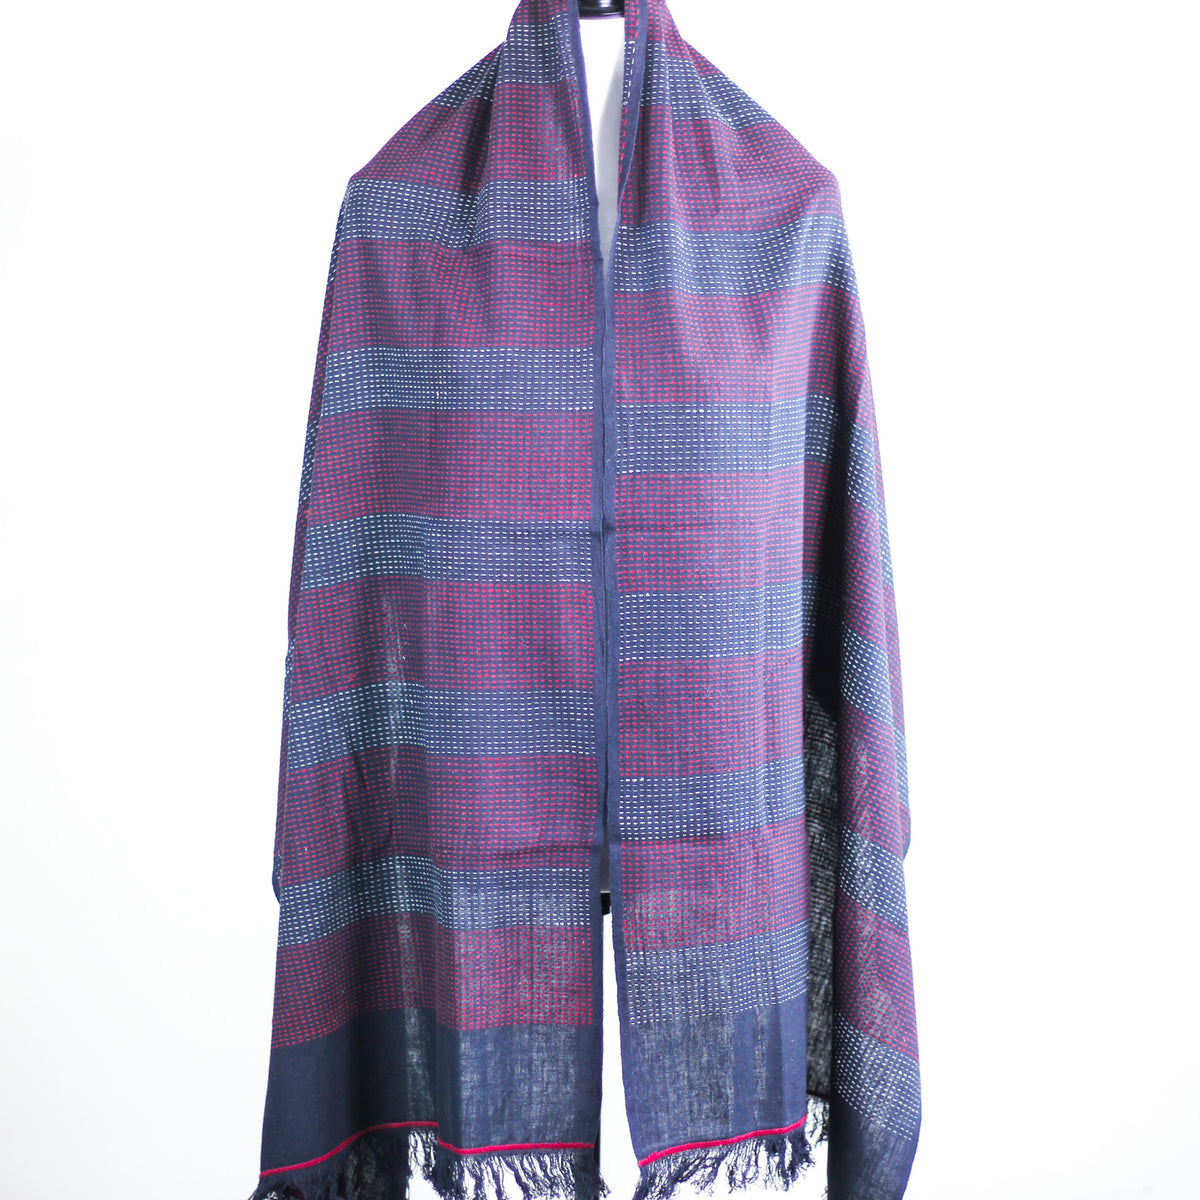 handspun and handwoven cotton wrap scarf